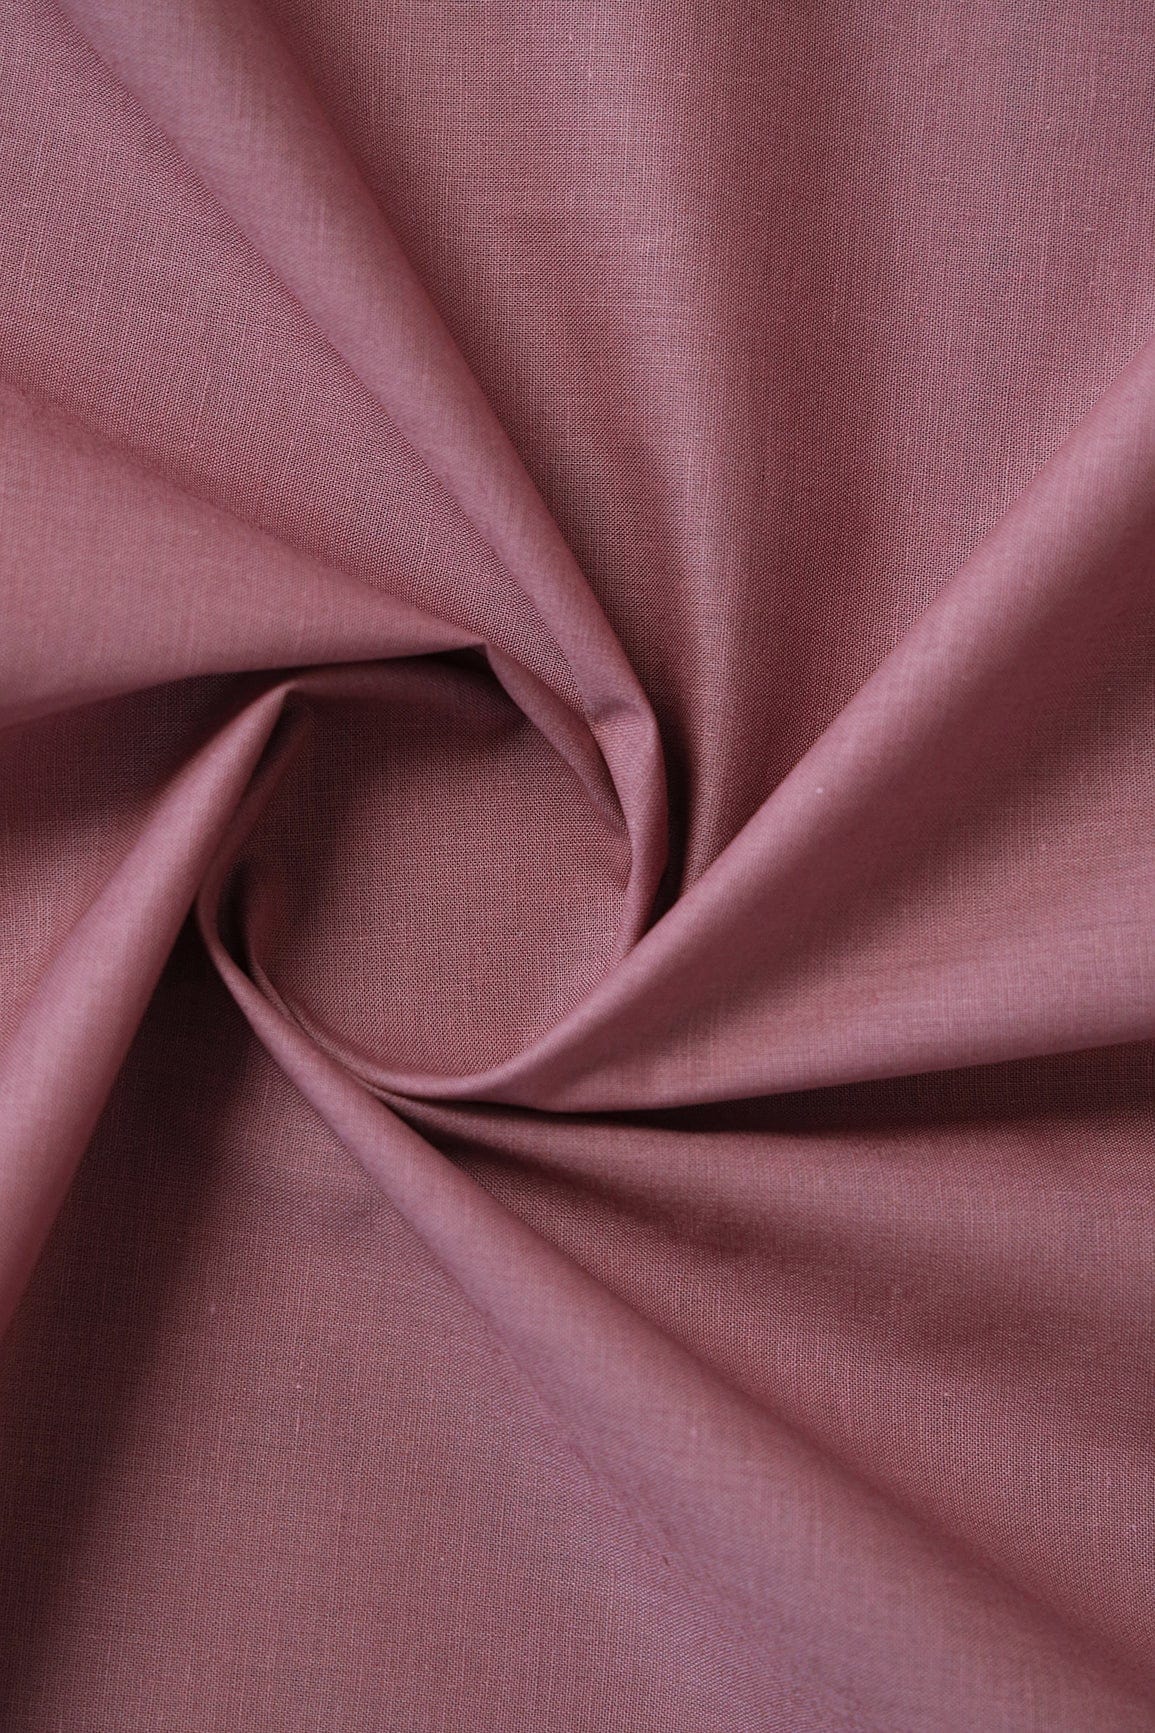 doeraa SUIT SETS Pastel Pink And Mauve Pure Mul Cotton Unstitched Suit Set (2 Piece)